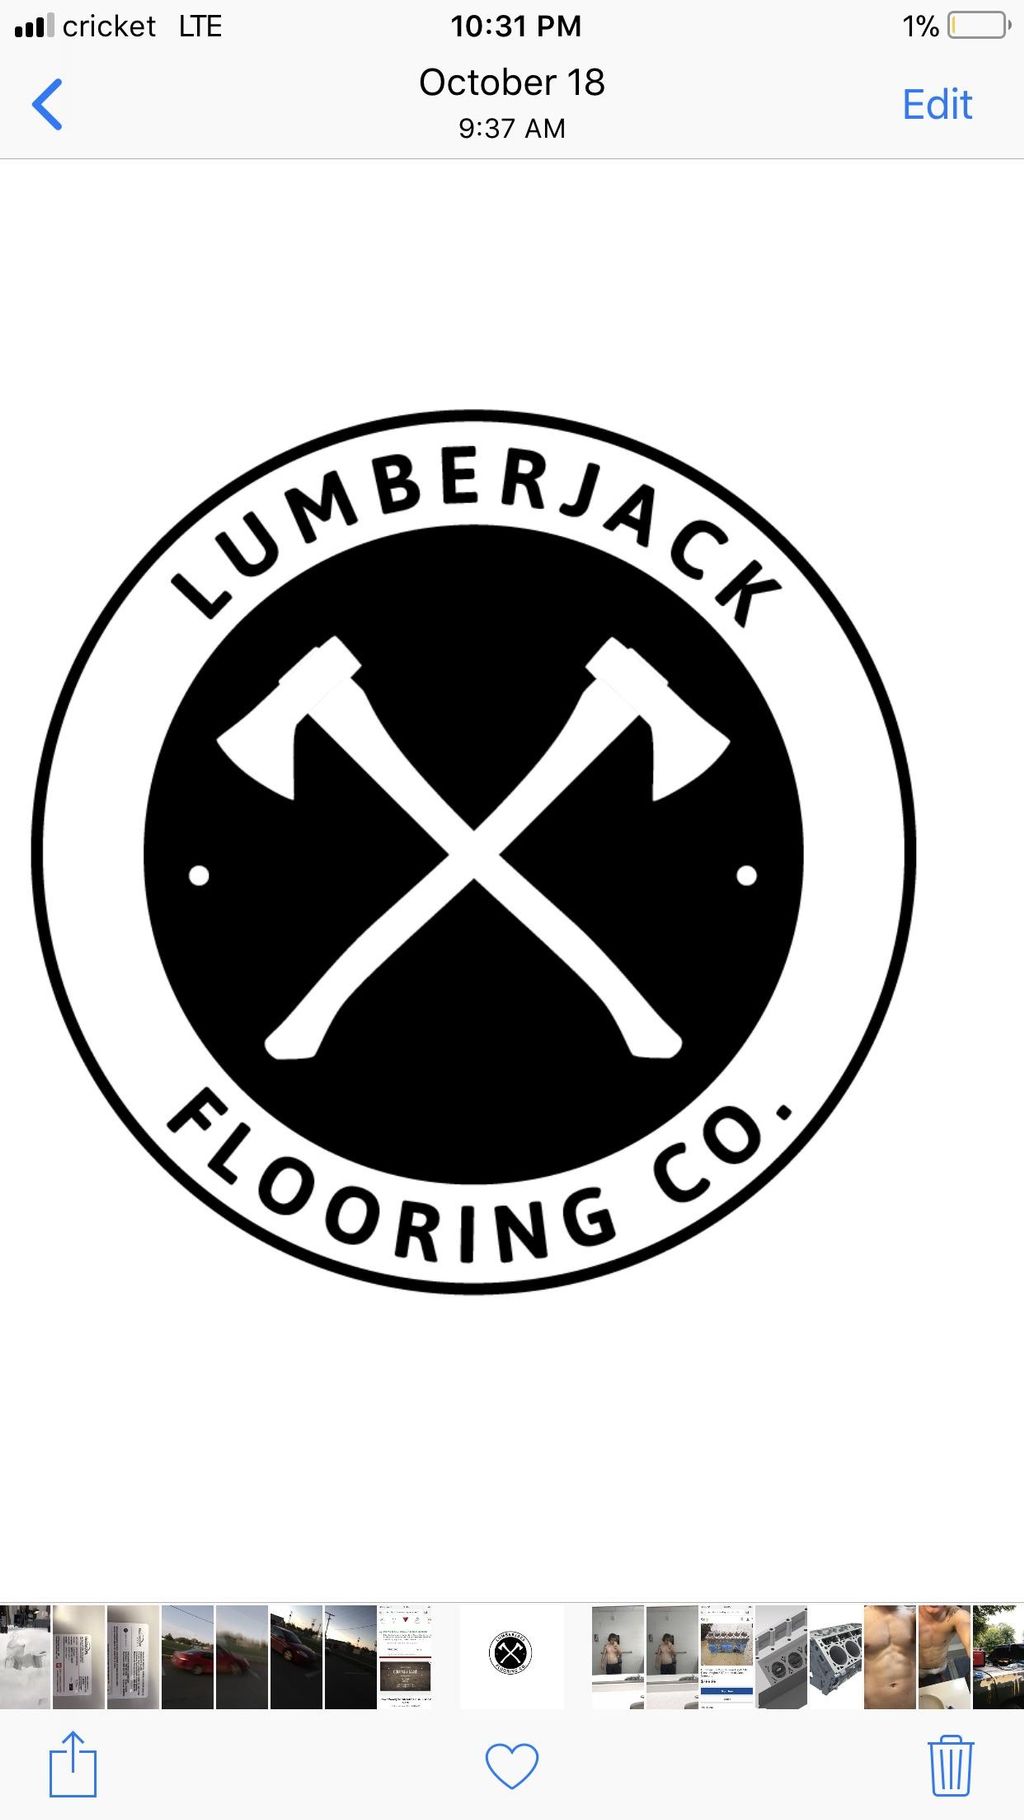 Lumberjack Flooring Co